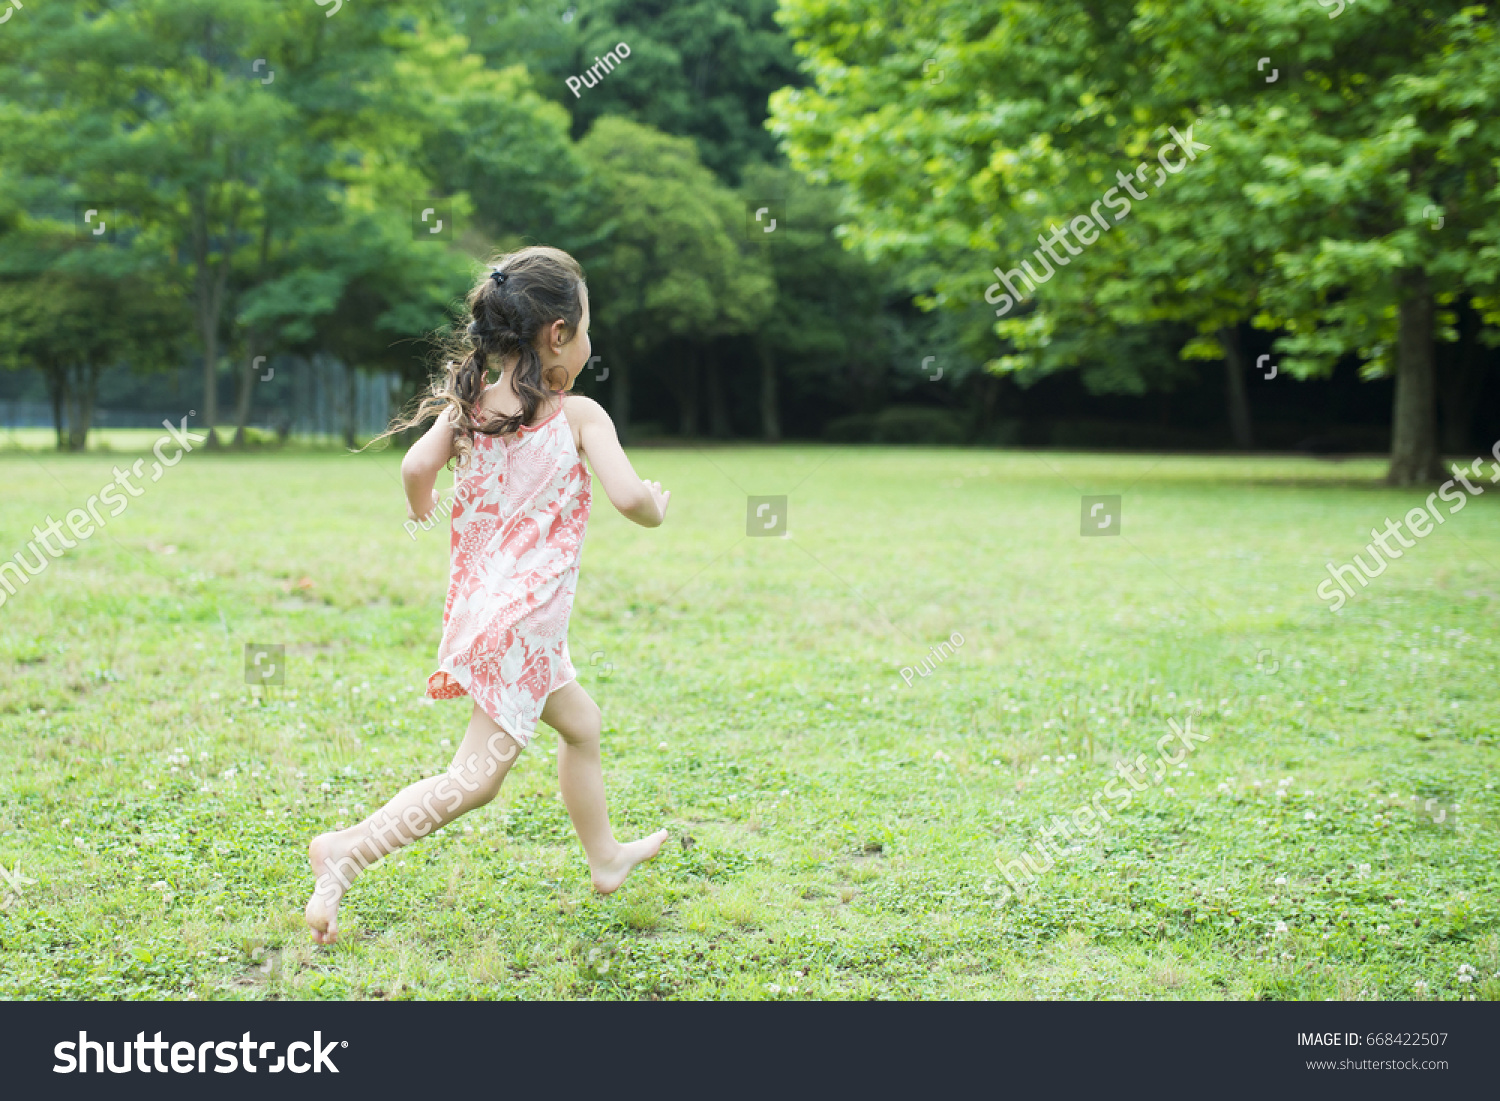 girl running barefoot